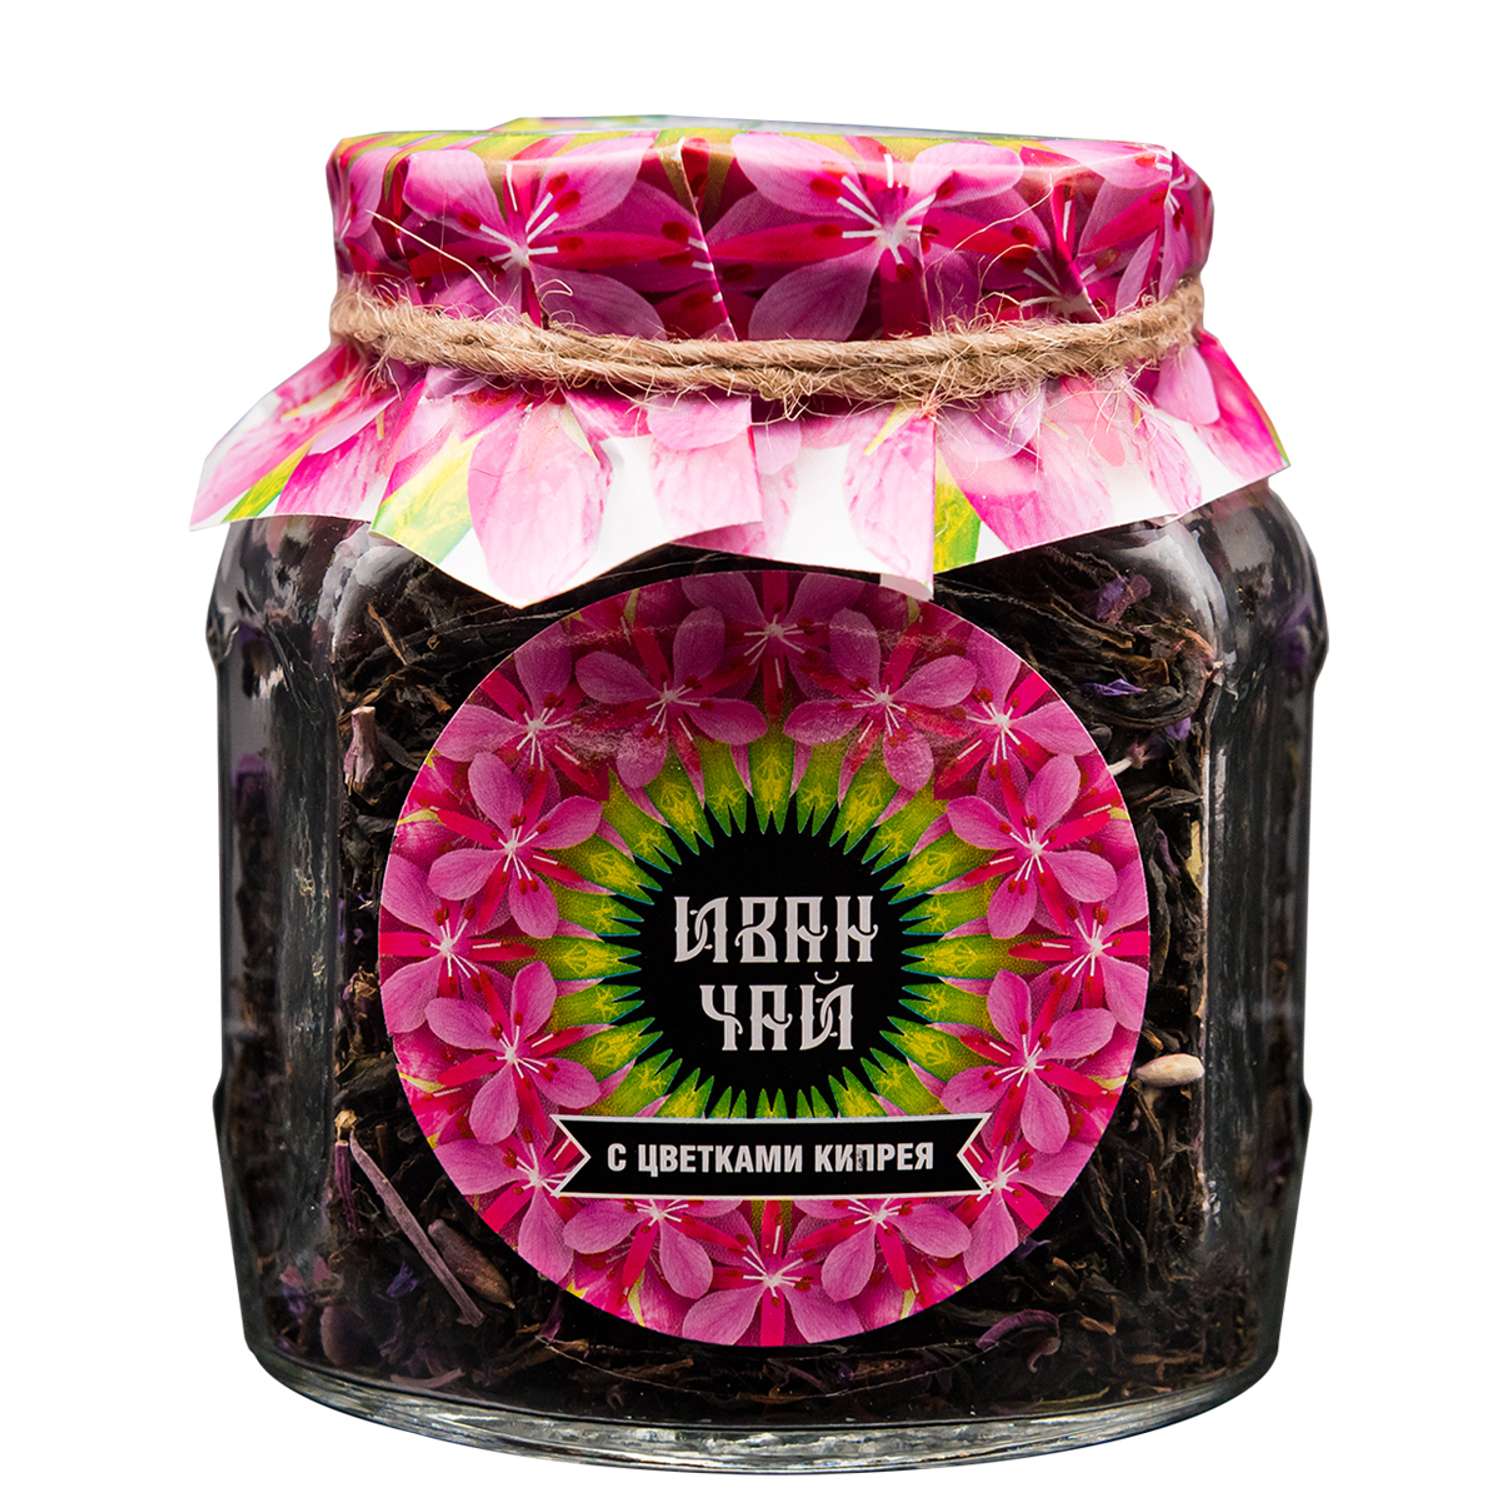 Чай Емельяновская Биофабрика иван-чай в стеклянной банке с цветами кипрея ферментированный 50 гр. в подарочной упаковке - фото 1